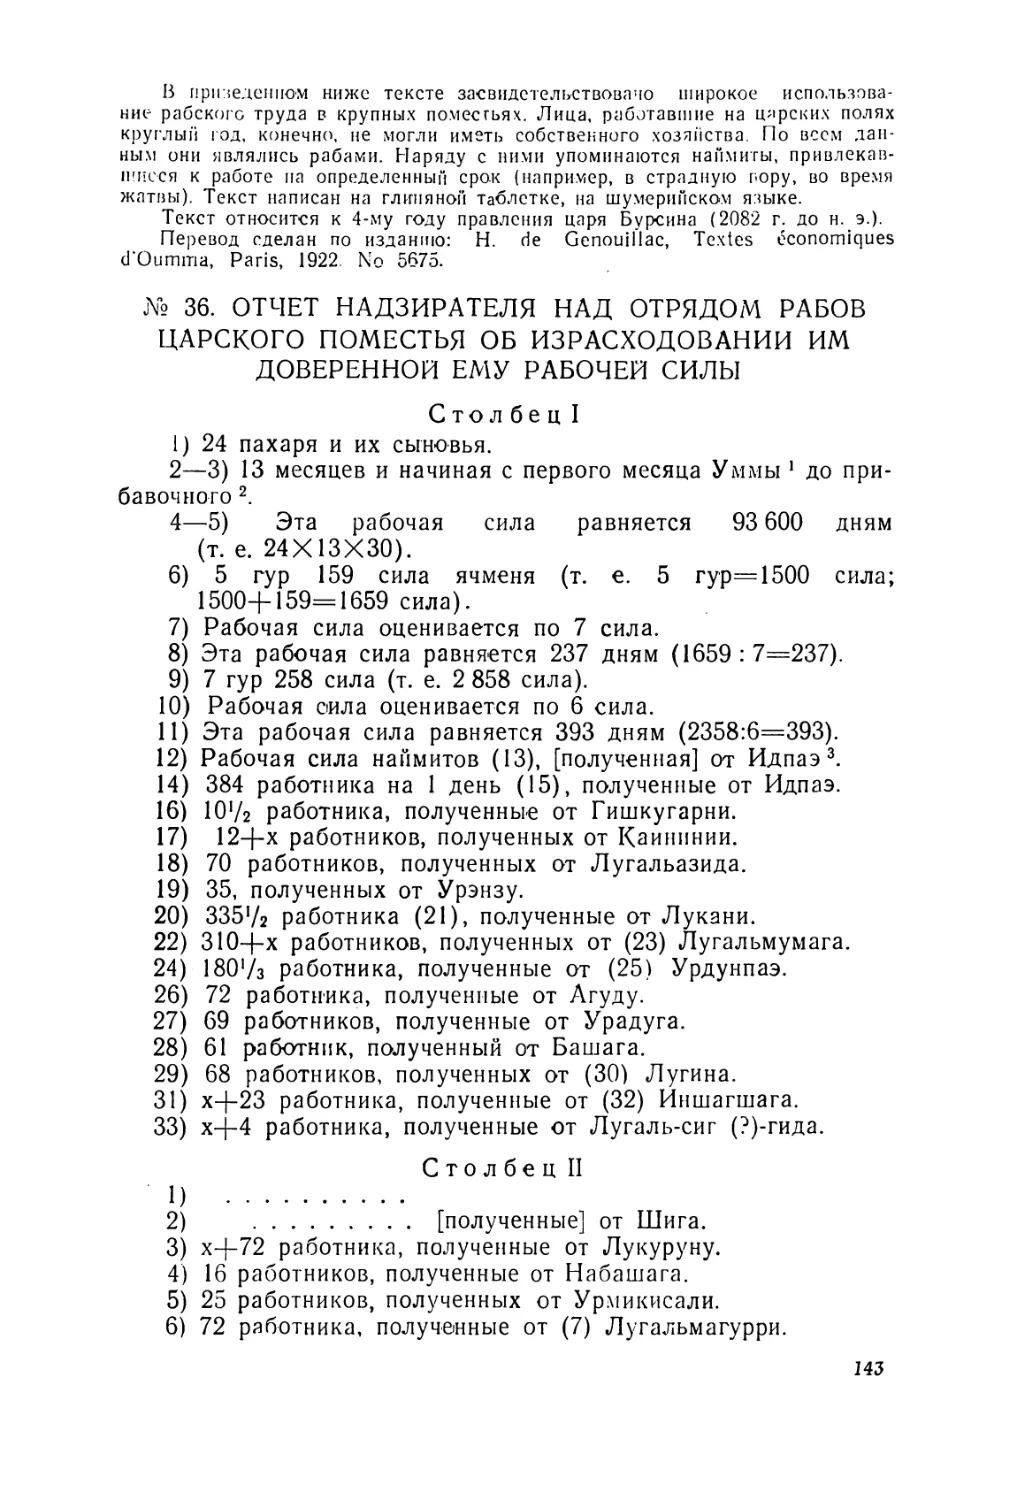 Шумерские документы хозяйственной отчетности
Отчет надзирателя над отрядом рабов